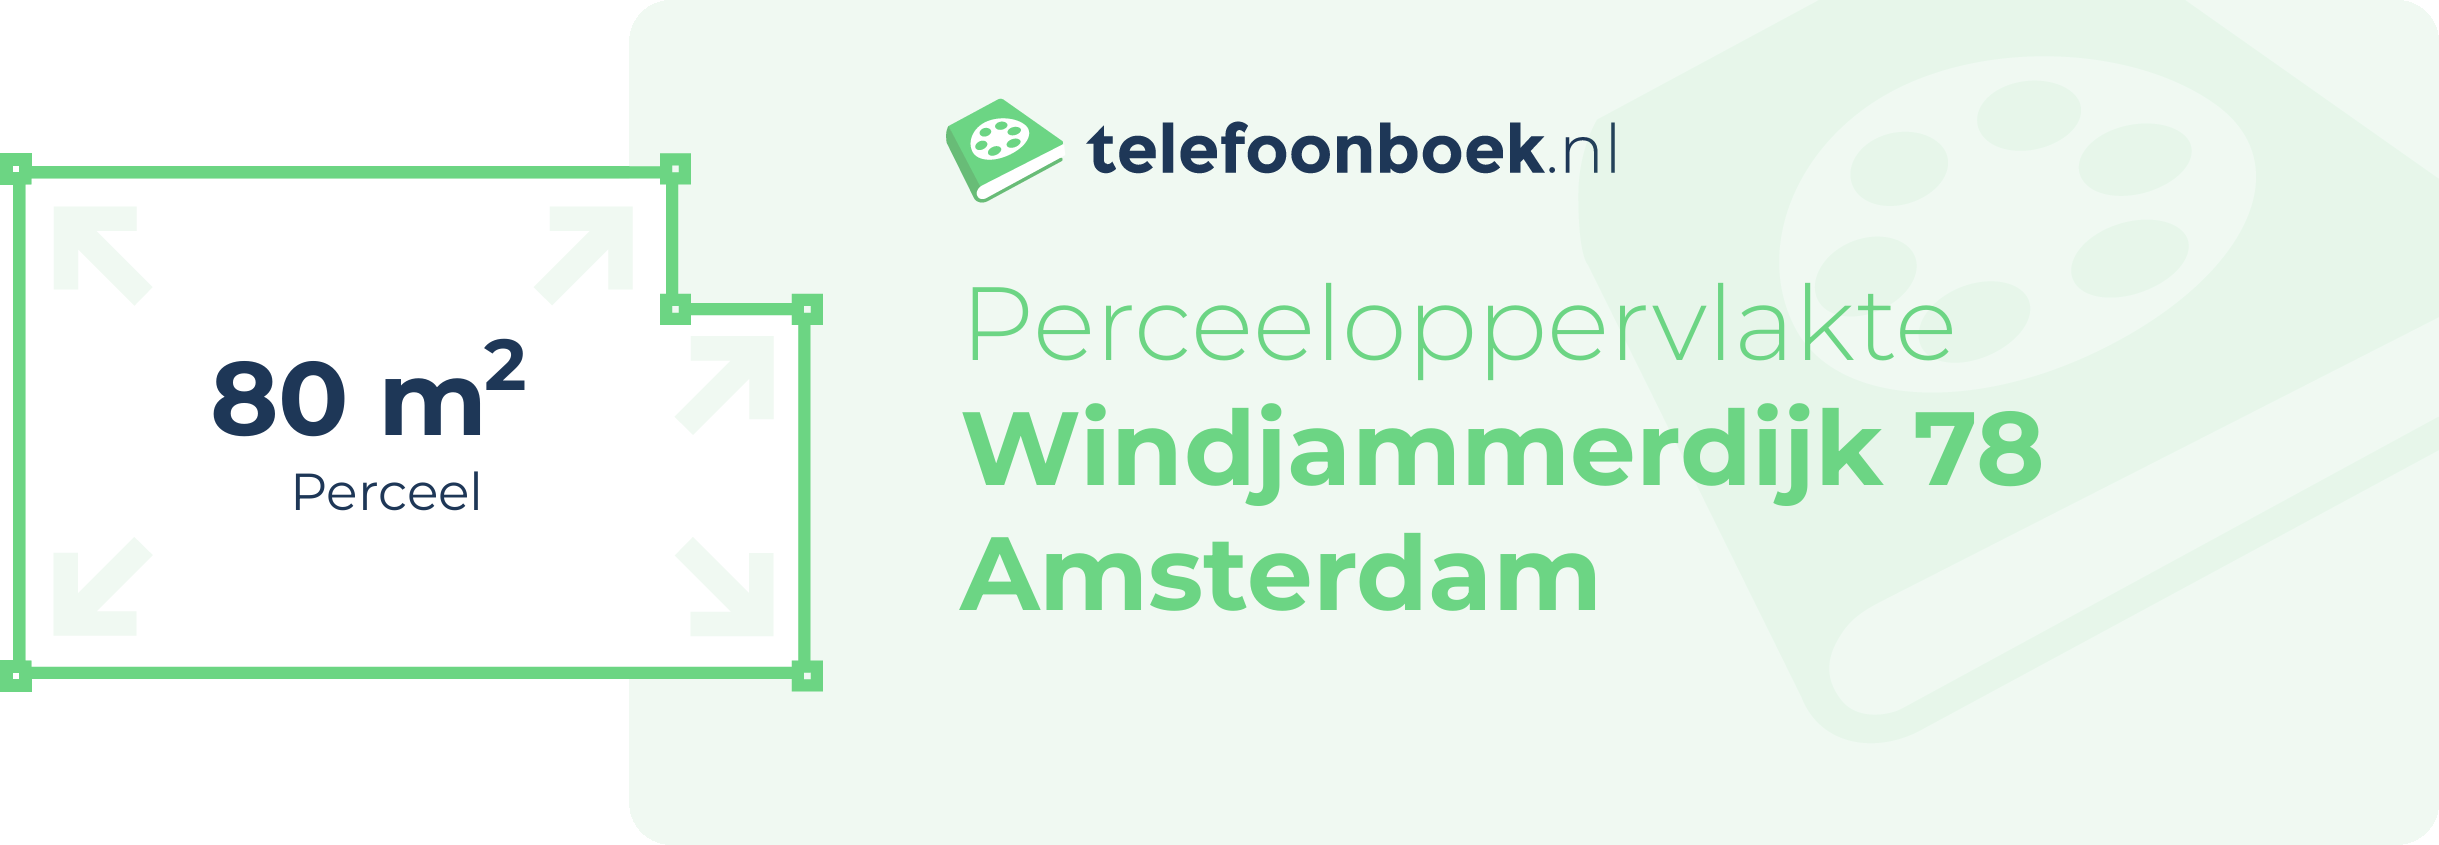 Perceeloppervlakte Windjammerdijk 78 Amsterdam